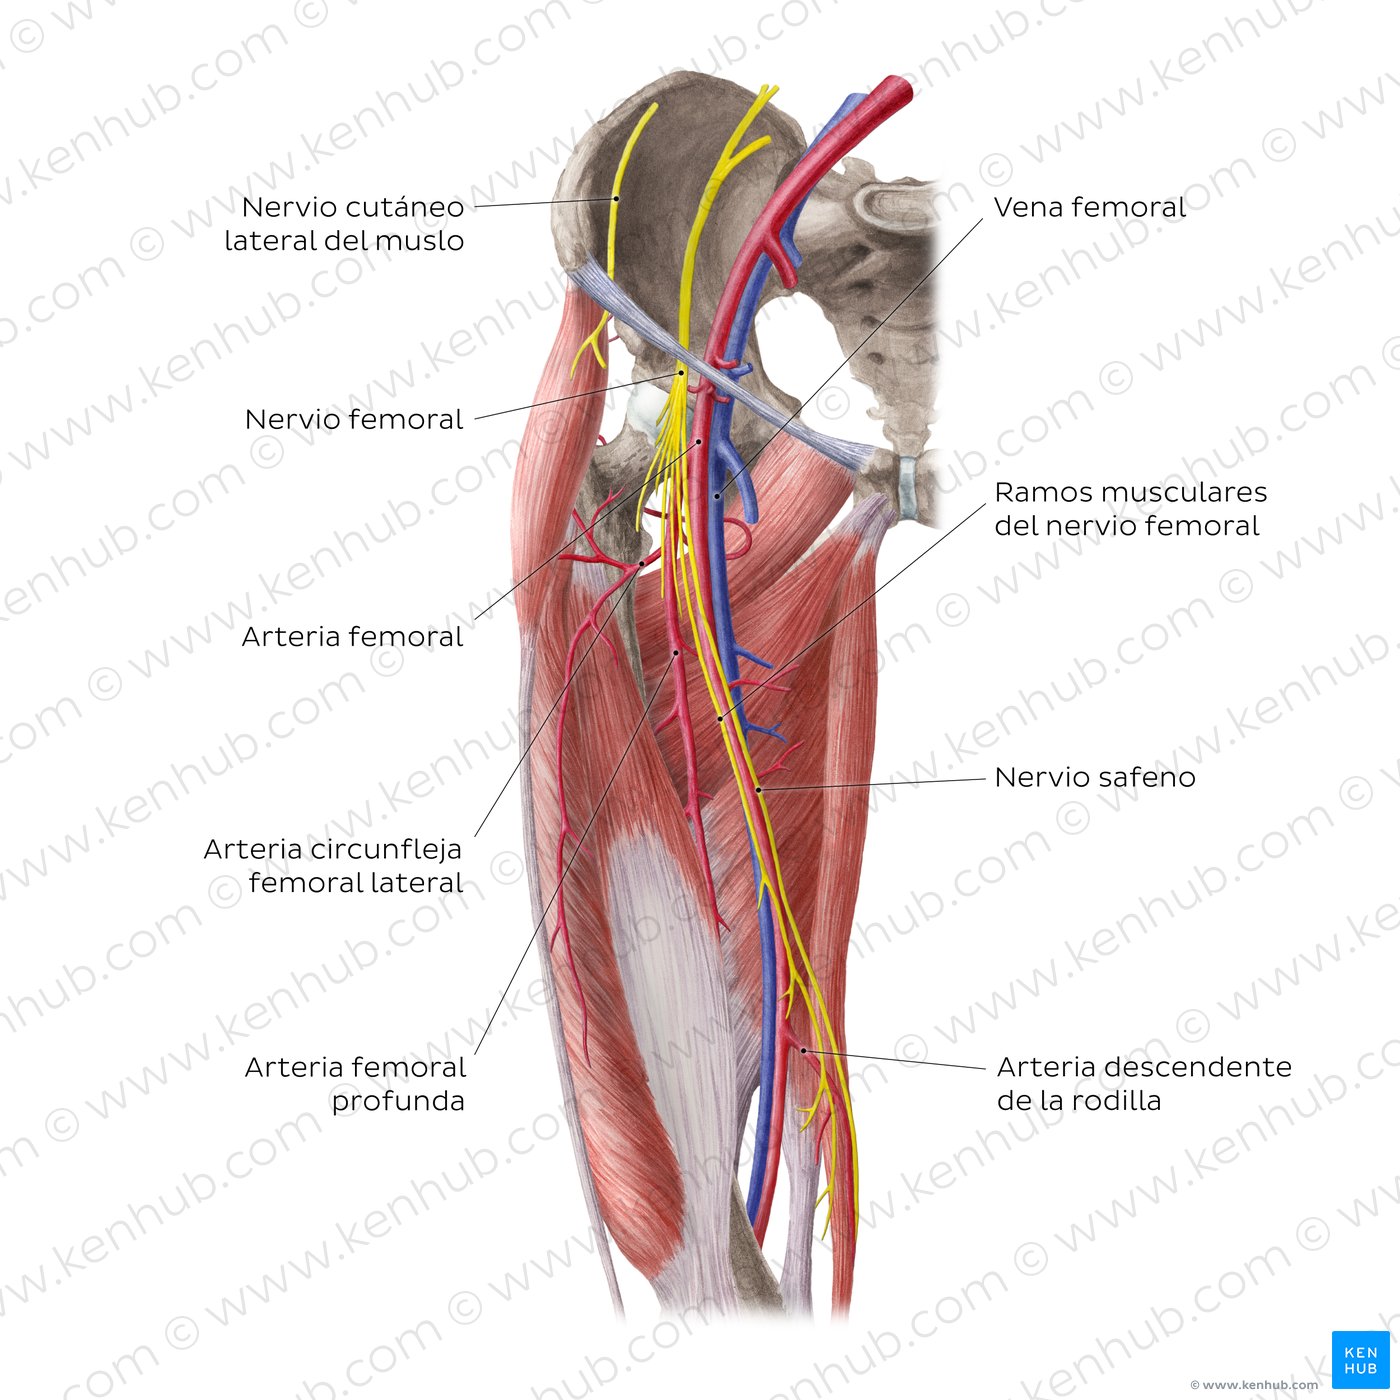 Vista anterior de las arterias y nervios de la cadera y el muslo